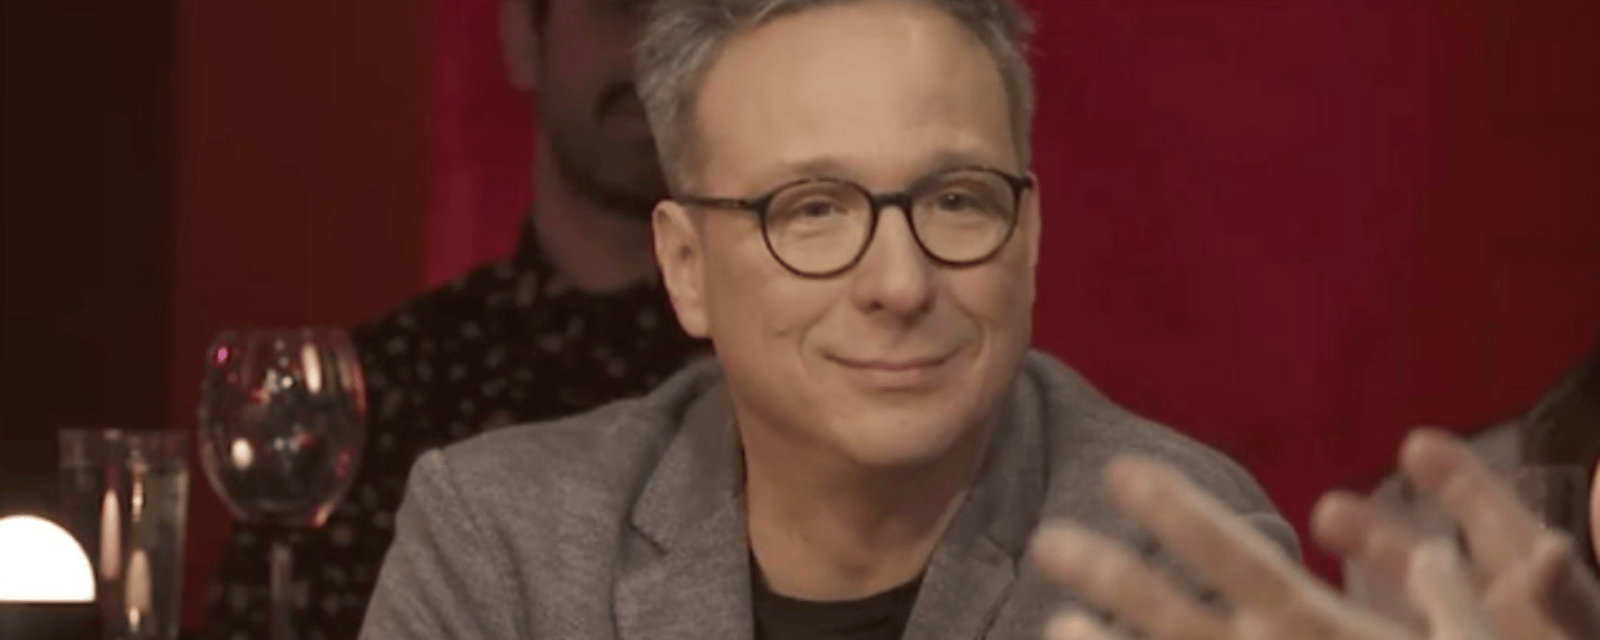 Pierre-François Legendre a perdu un objet d'une valeur inestimable au spécial de Noël de Big Brother Célébrités